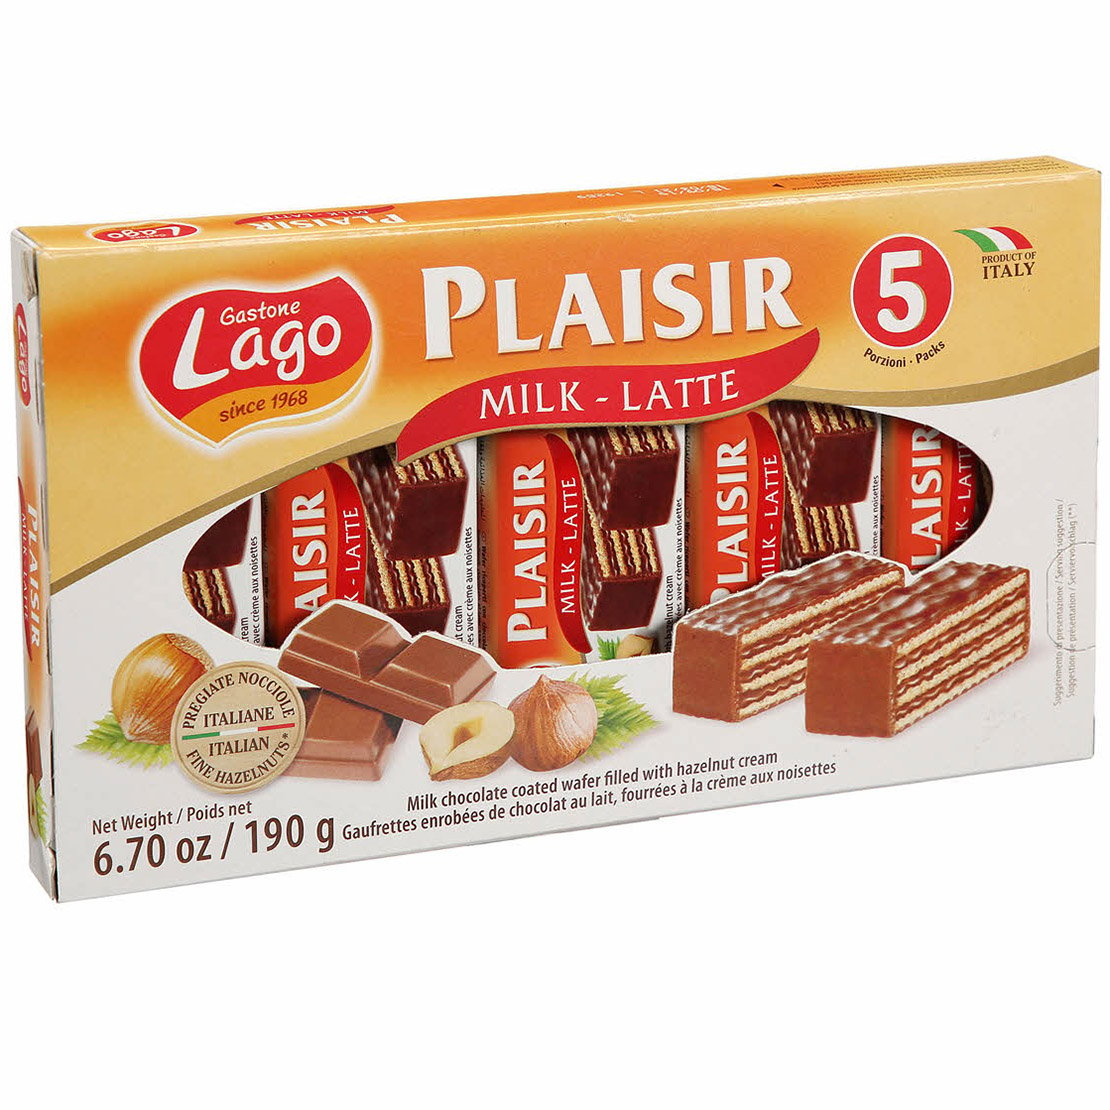 Вафлі Gastone Lagо Plaisir Milk-Latte з молочним кремом та лісовим горіхом, 190 г (756008) - фото 1